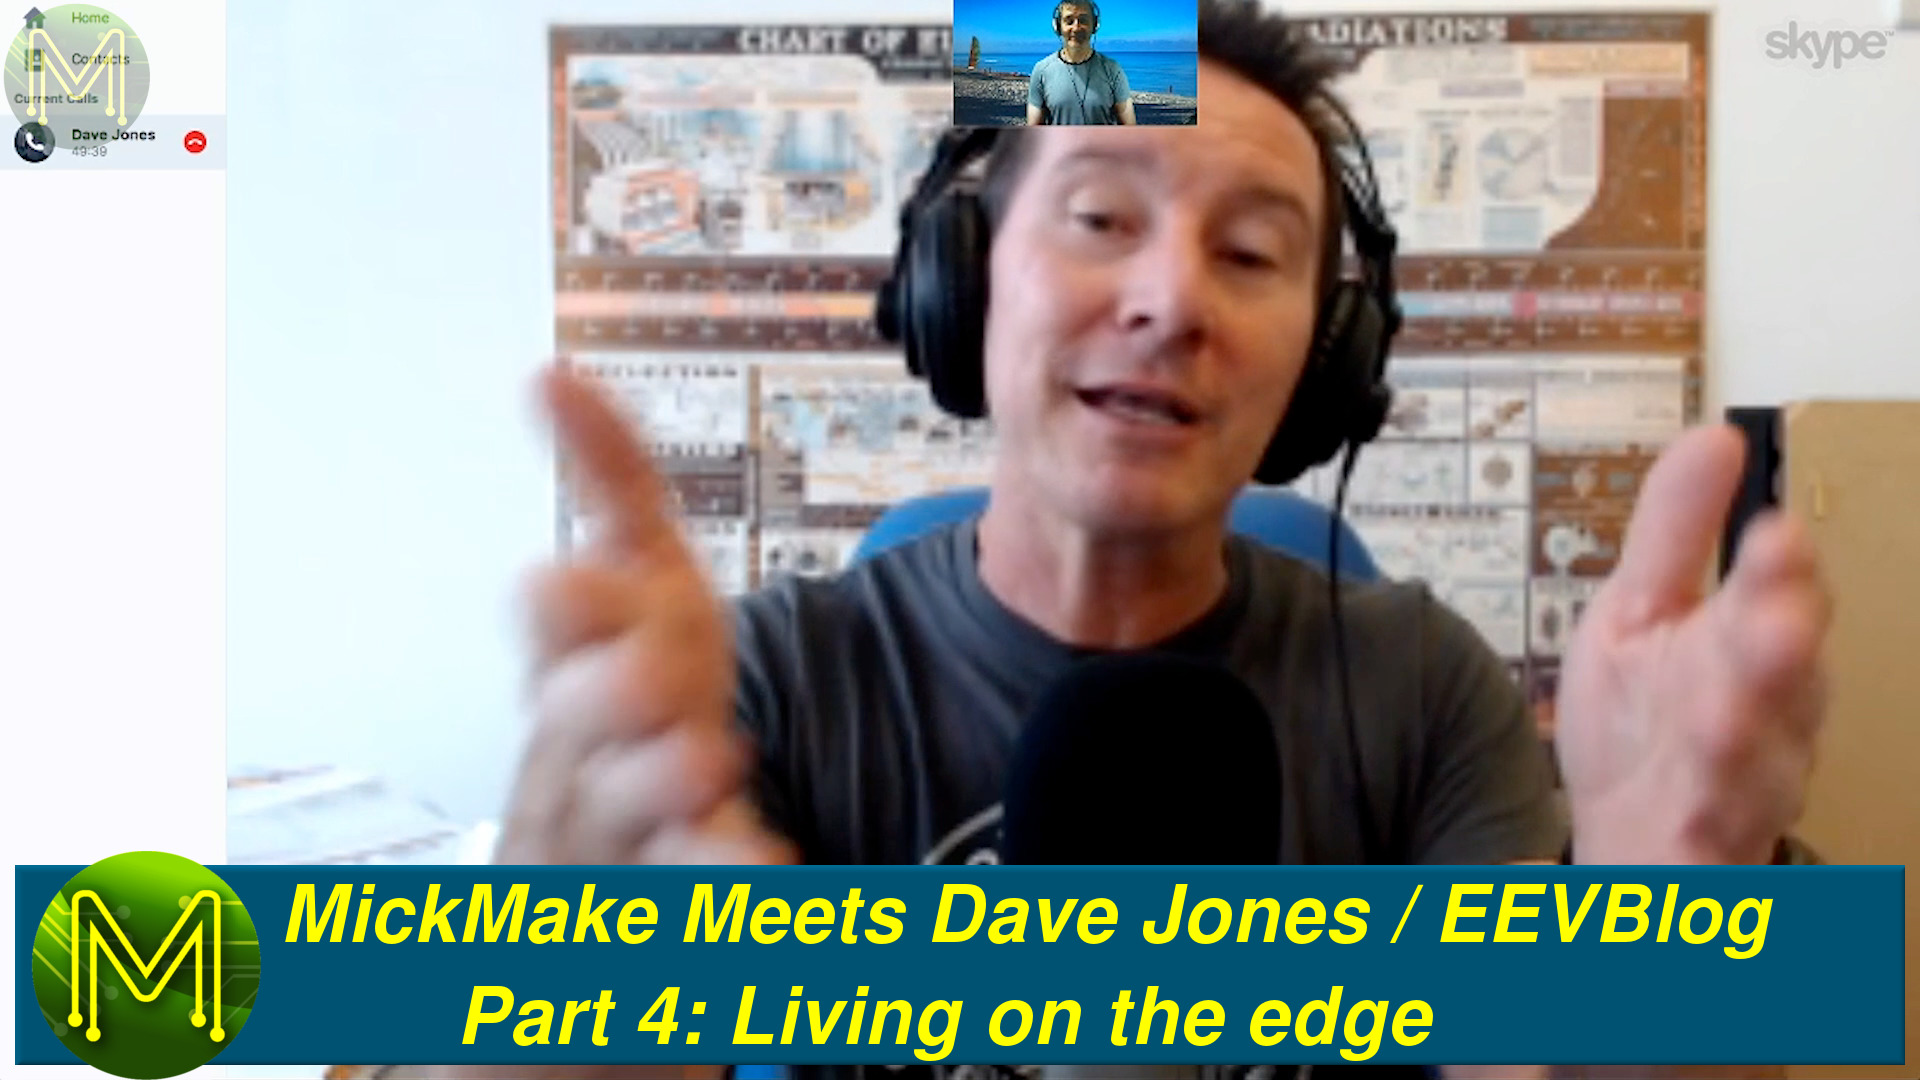 MickMake Meets: Dave Jones / EEVBlog - Part 4: Living on the edge